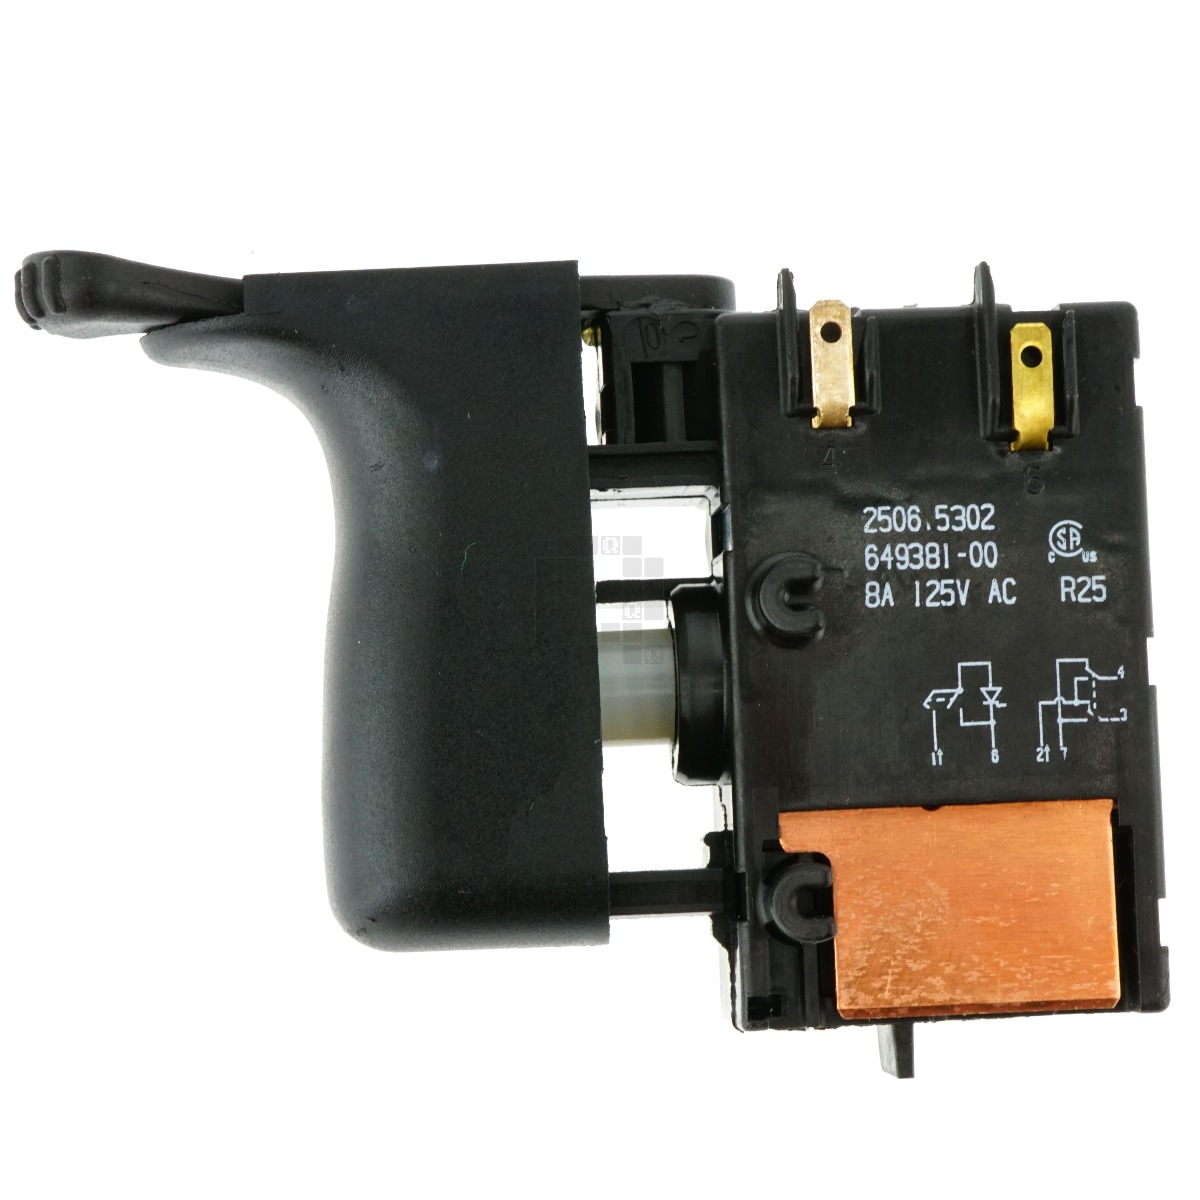 Dewalt 649381-00 VSR Trigger Switch